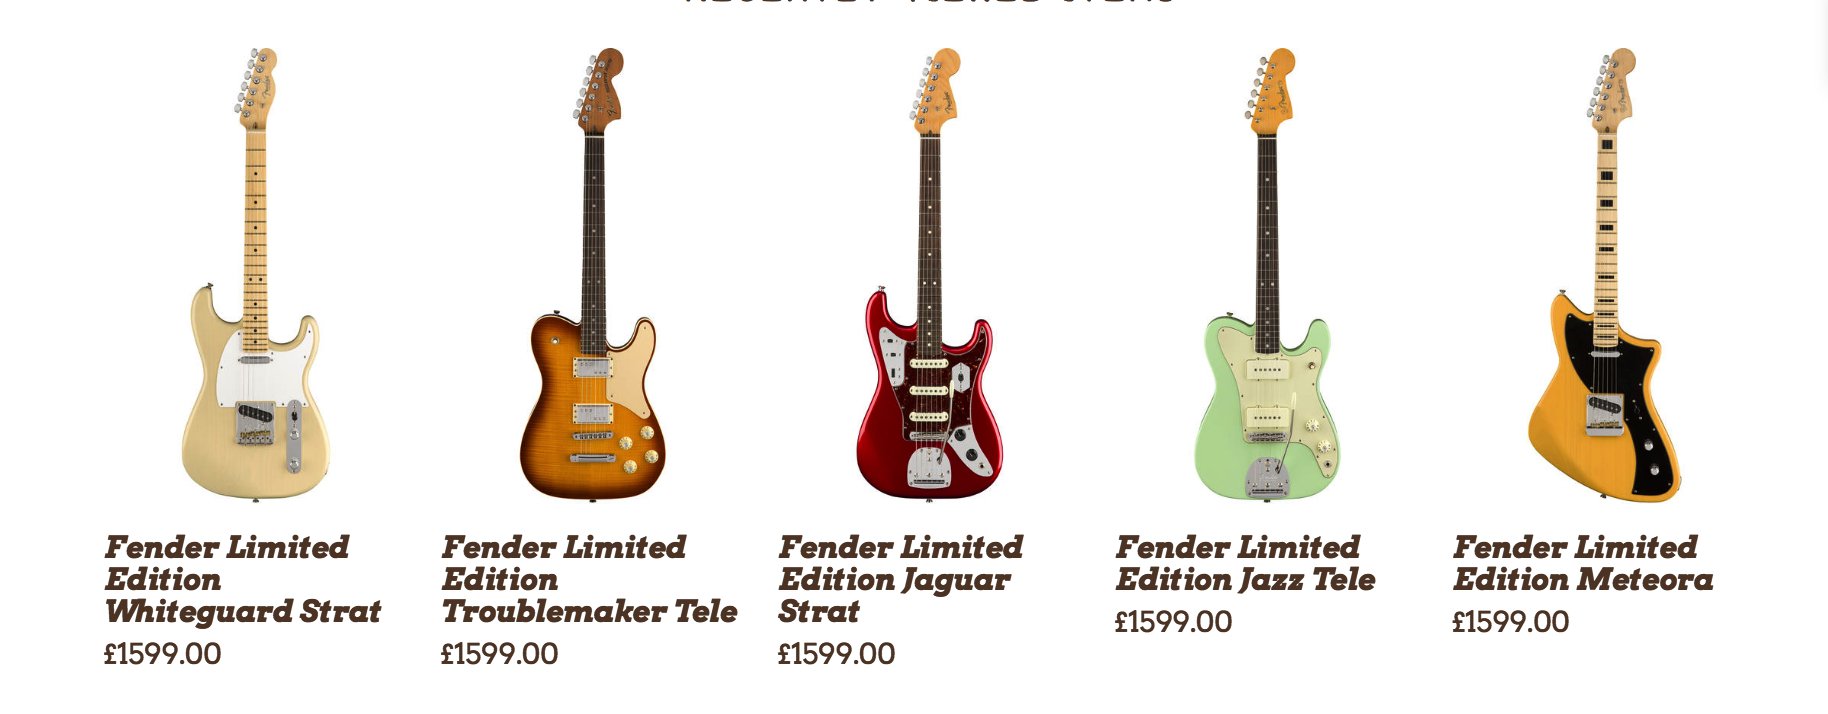 Fender-Limited-Edition-2018-models-leake